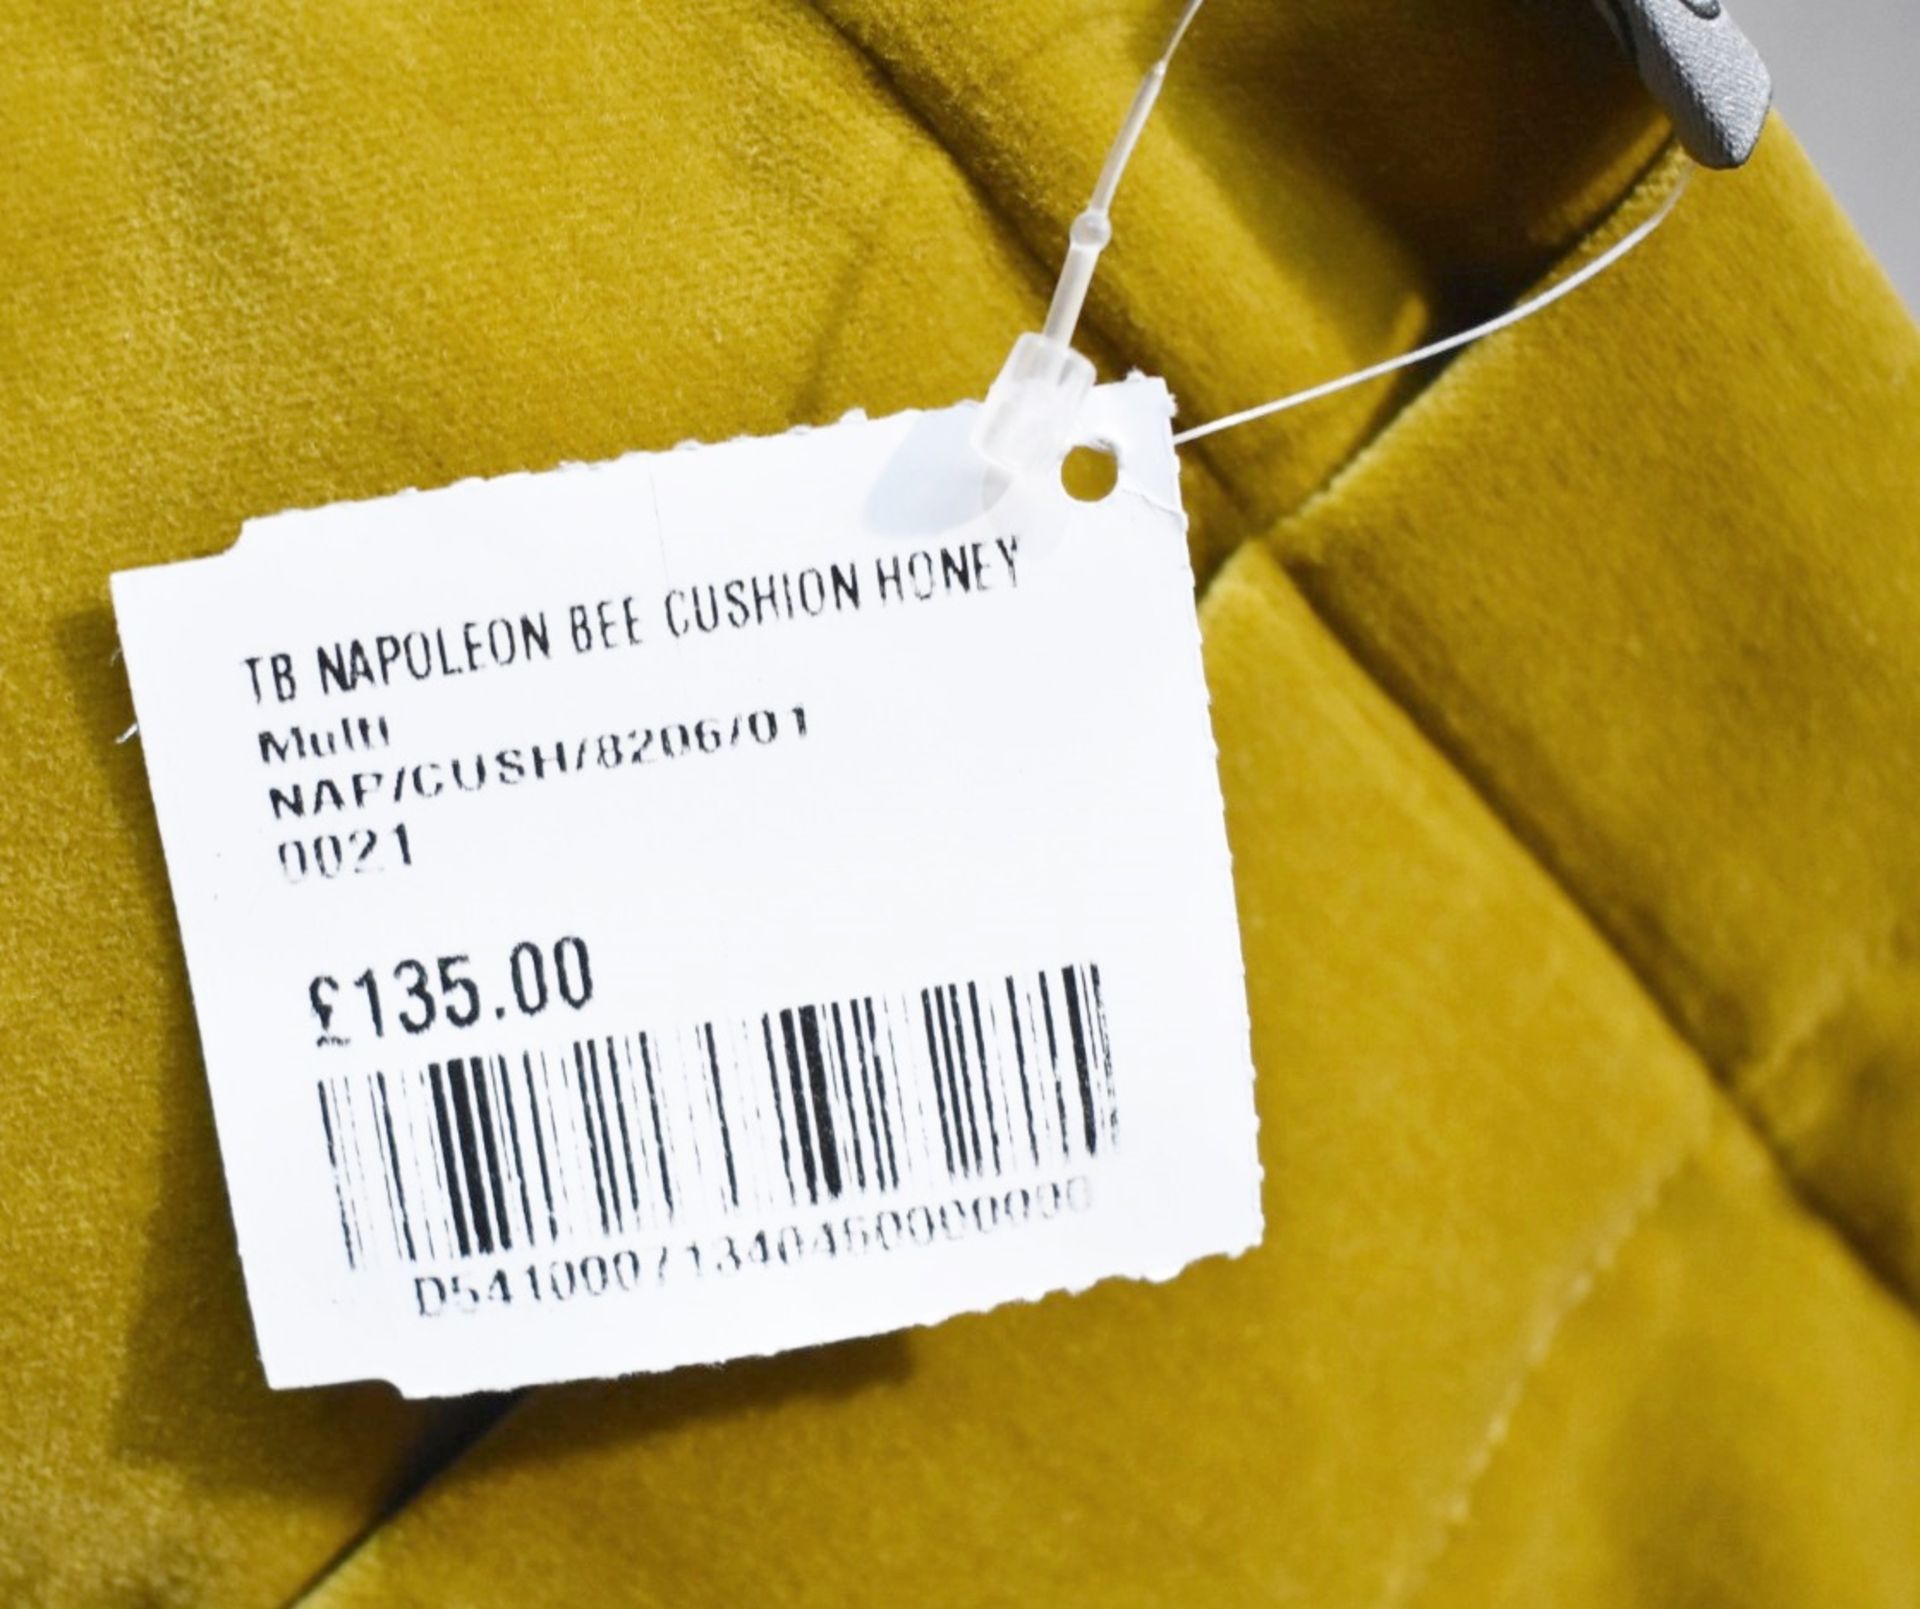 1 x TIMOROUS BEASTIES Napoleon Bee Cushion, in Honey Yellow - Original Price £135.00 - Image 5 of 7